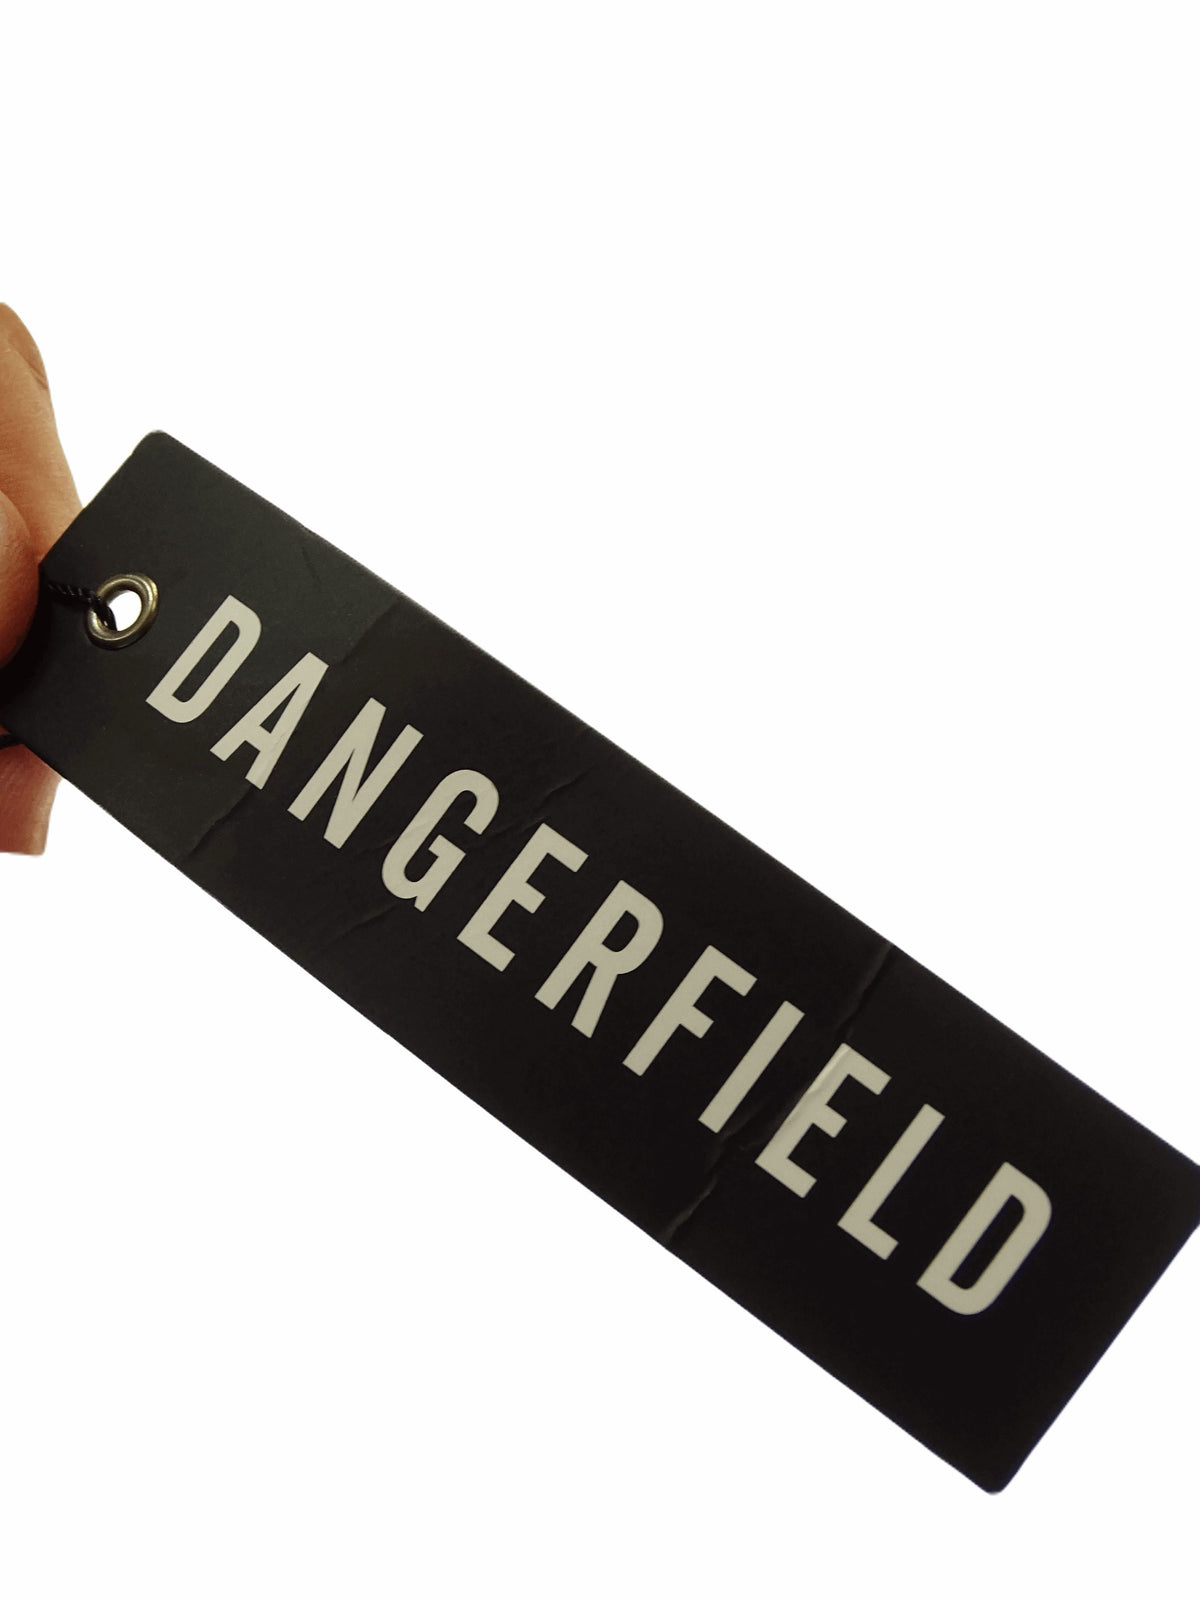 Dangerfield Black Skirt 14